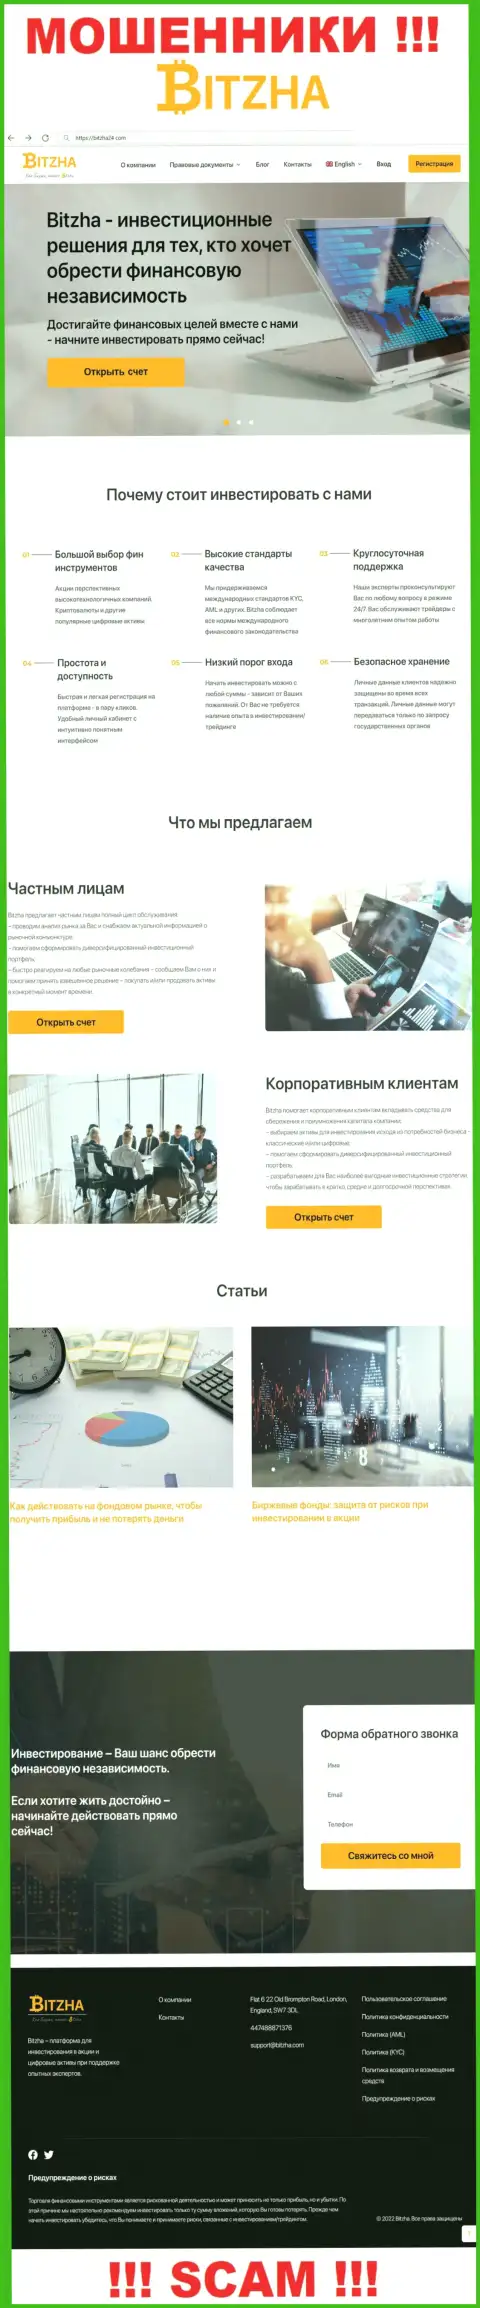 На официальном интернет-портале Bitzha24 Com лохов разводят на вложение денег